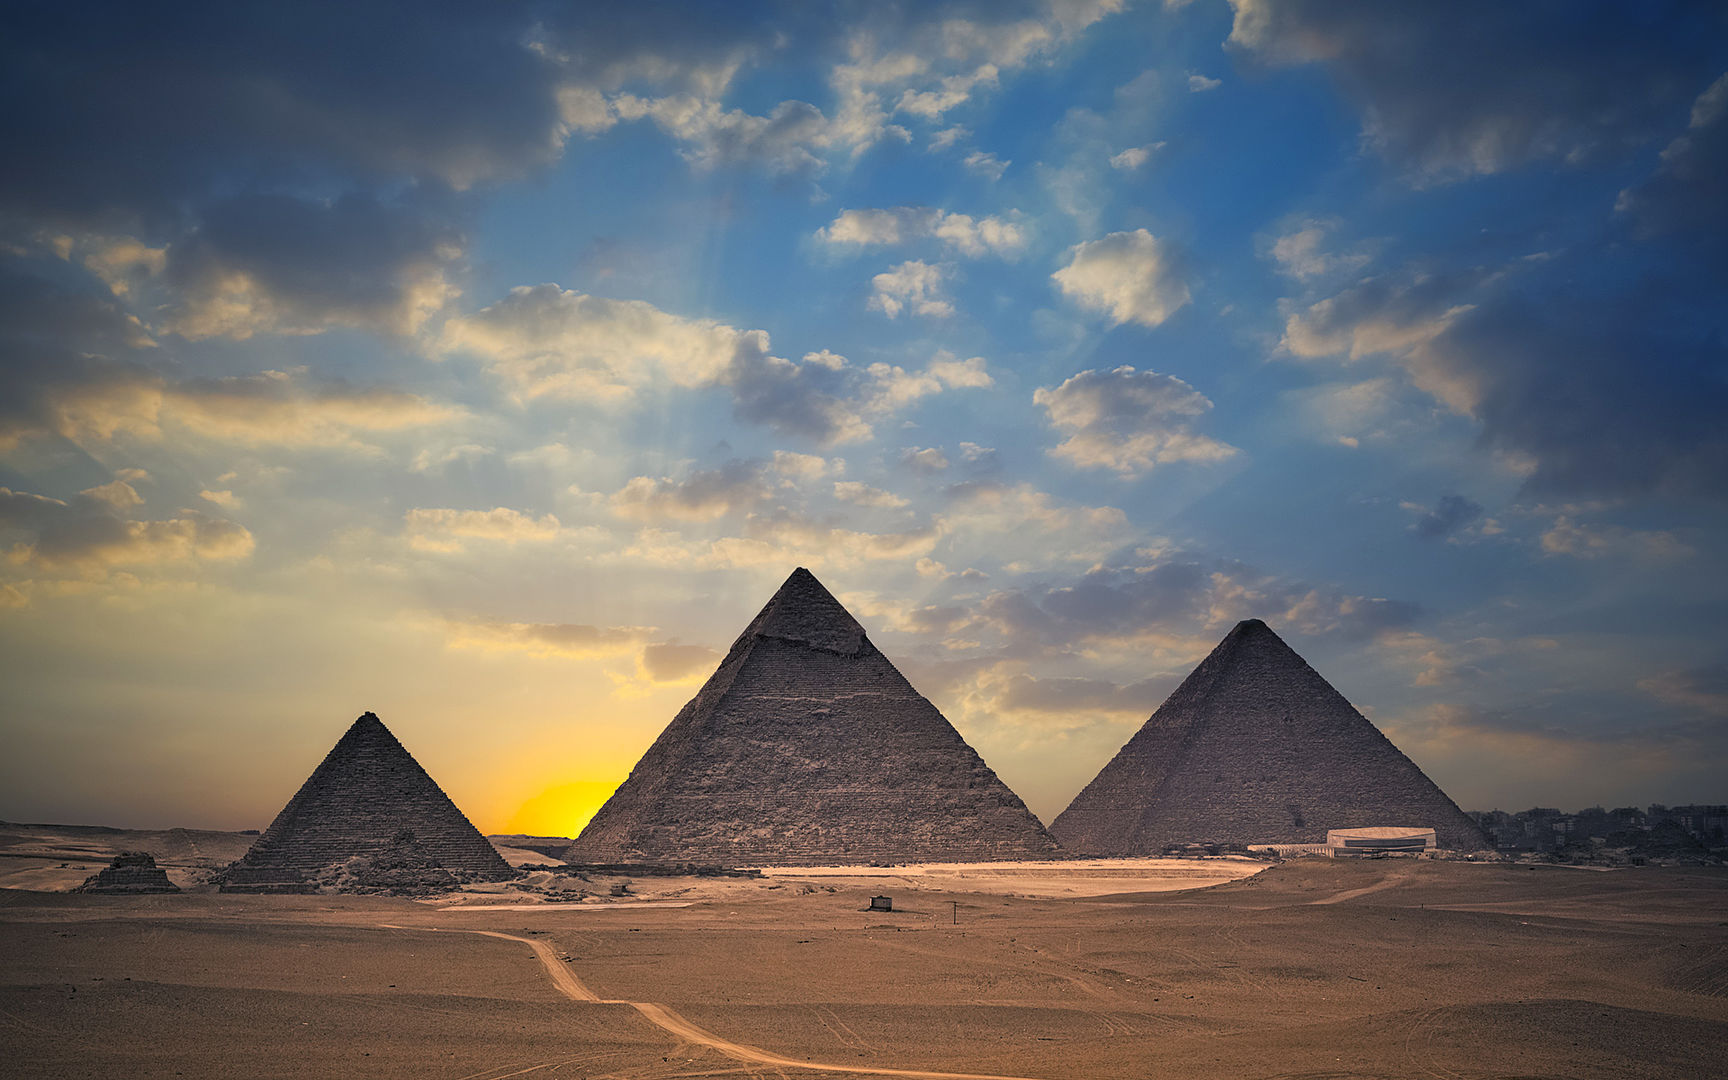 صور وخلفيات لأهرامات الجيزة وأبو الهول Pyramids of Giza and the Sphinx 2410